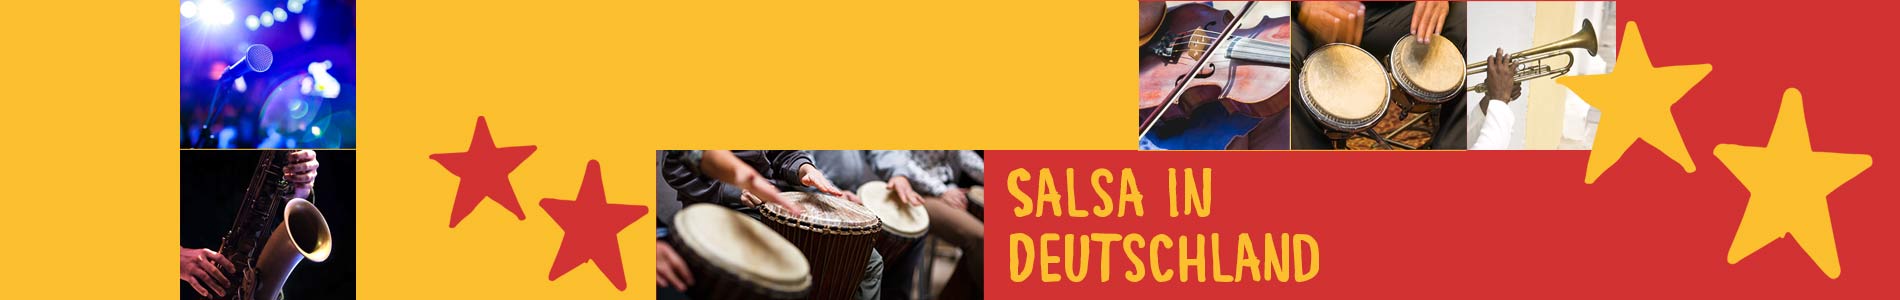 Salsa in Burkhardtsdorf – Salsa lernen und tanzen, Tanzkurse, Partys, Veranstaltungen